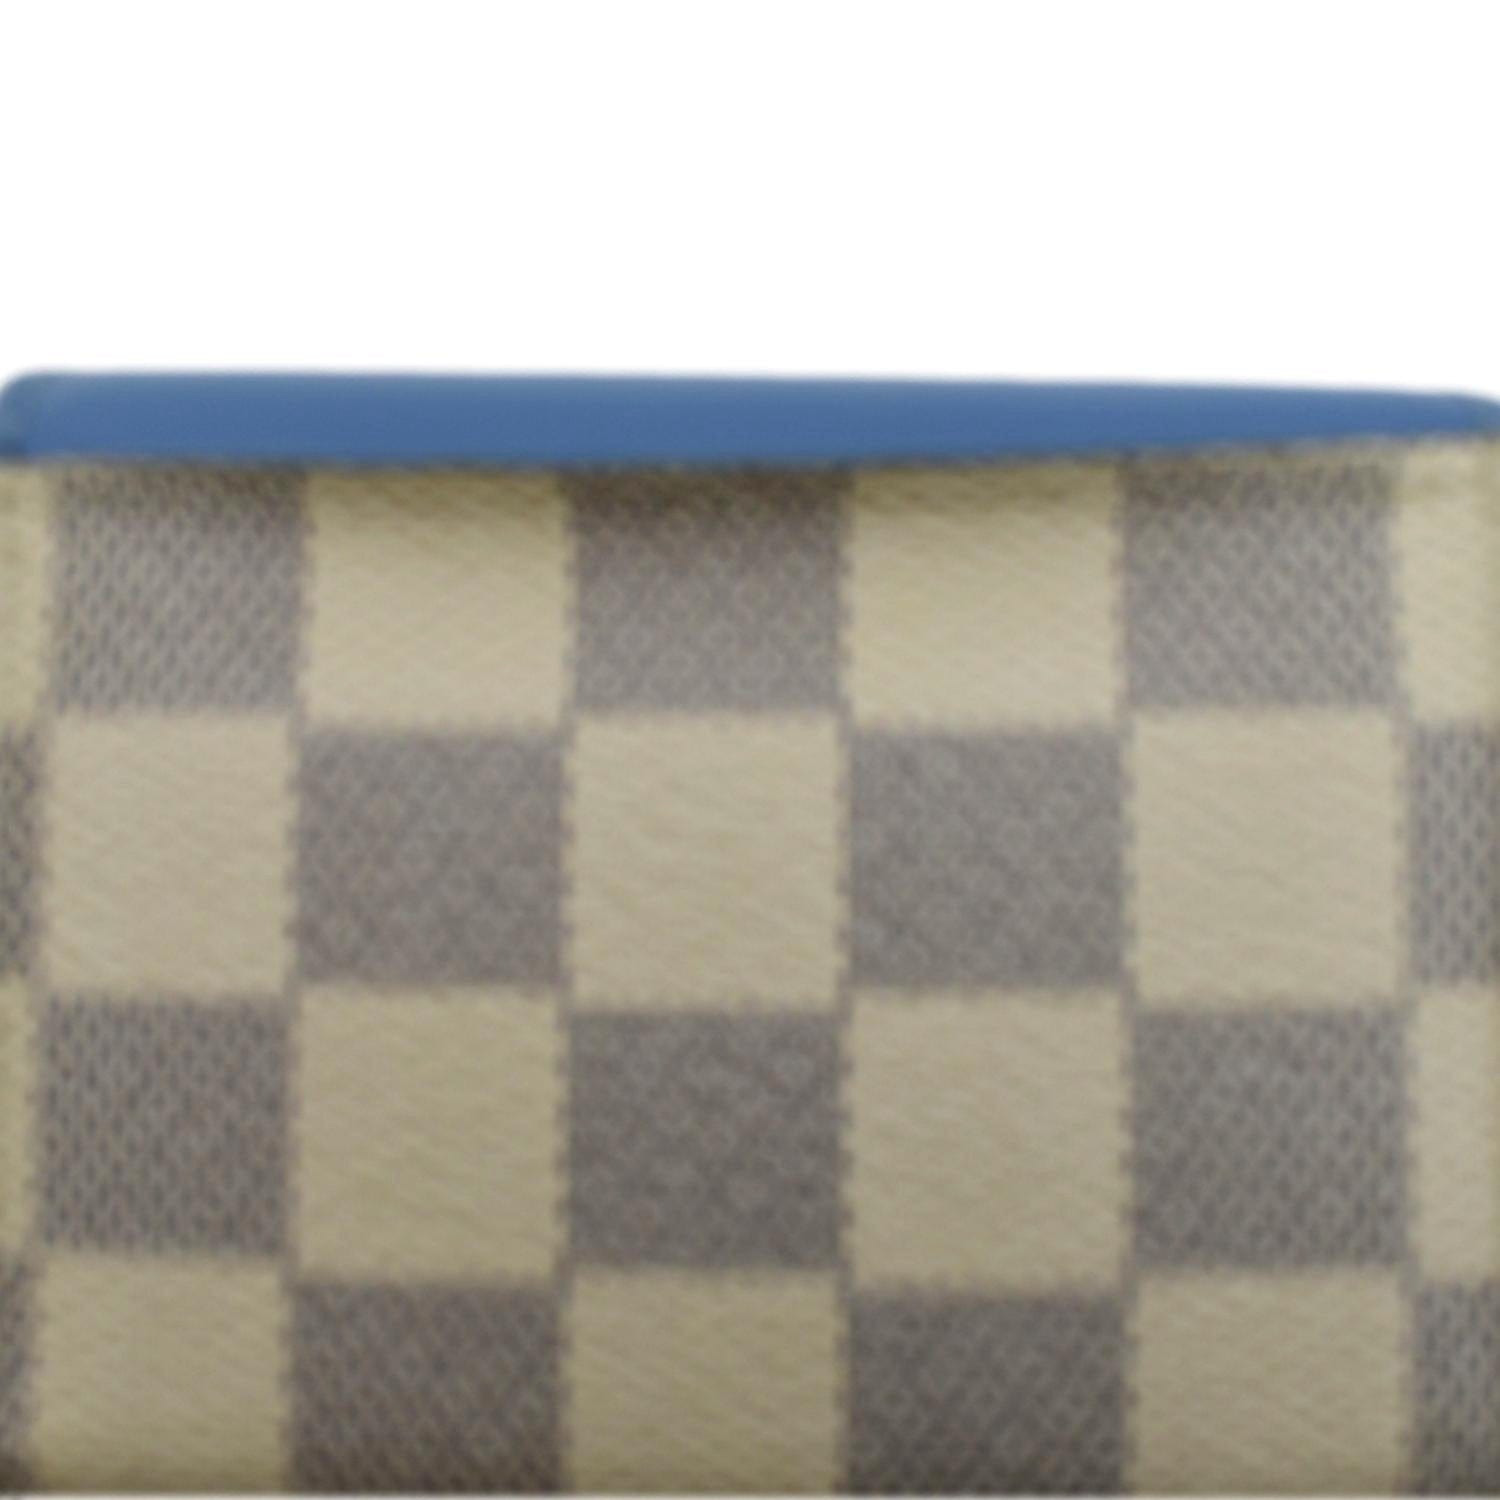 Louis Vuitton Blue Leather & Damier Azur Canvas Zoe Wallet QJA0DQDNWB152